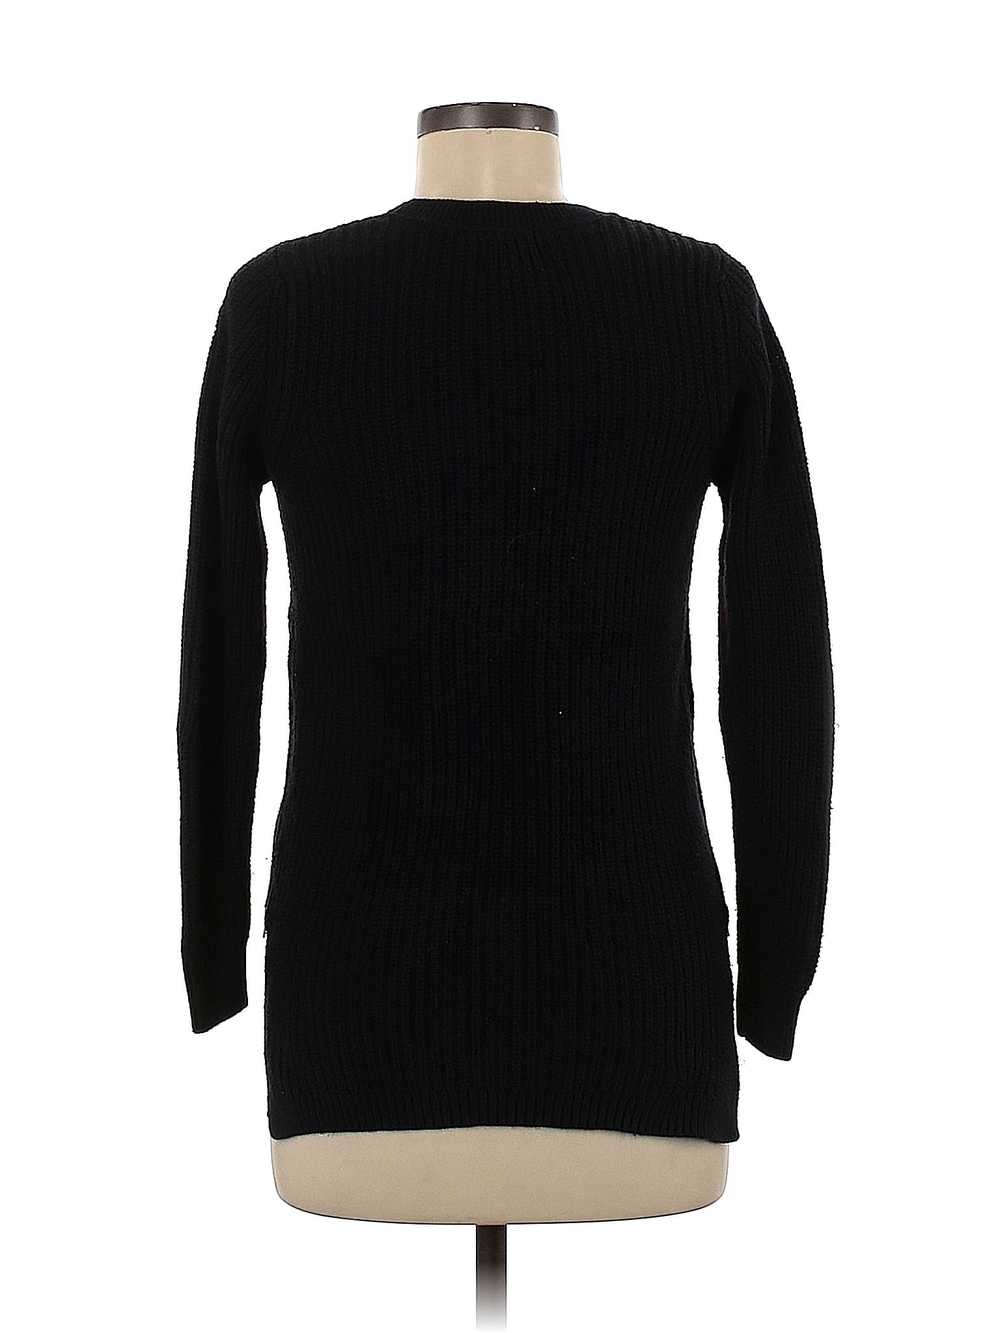 LA Hearts Women Black Pullover Sweater XS - image 2